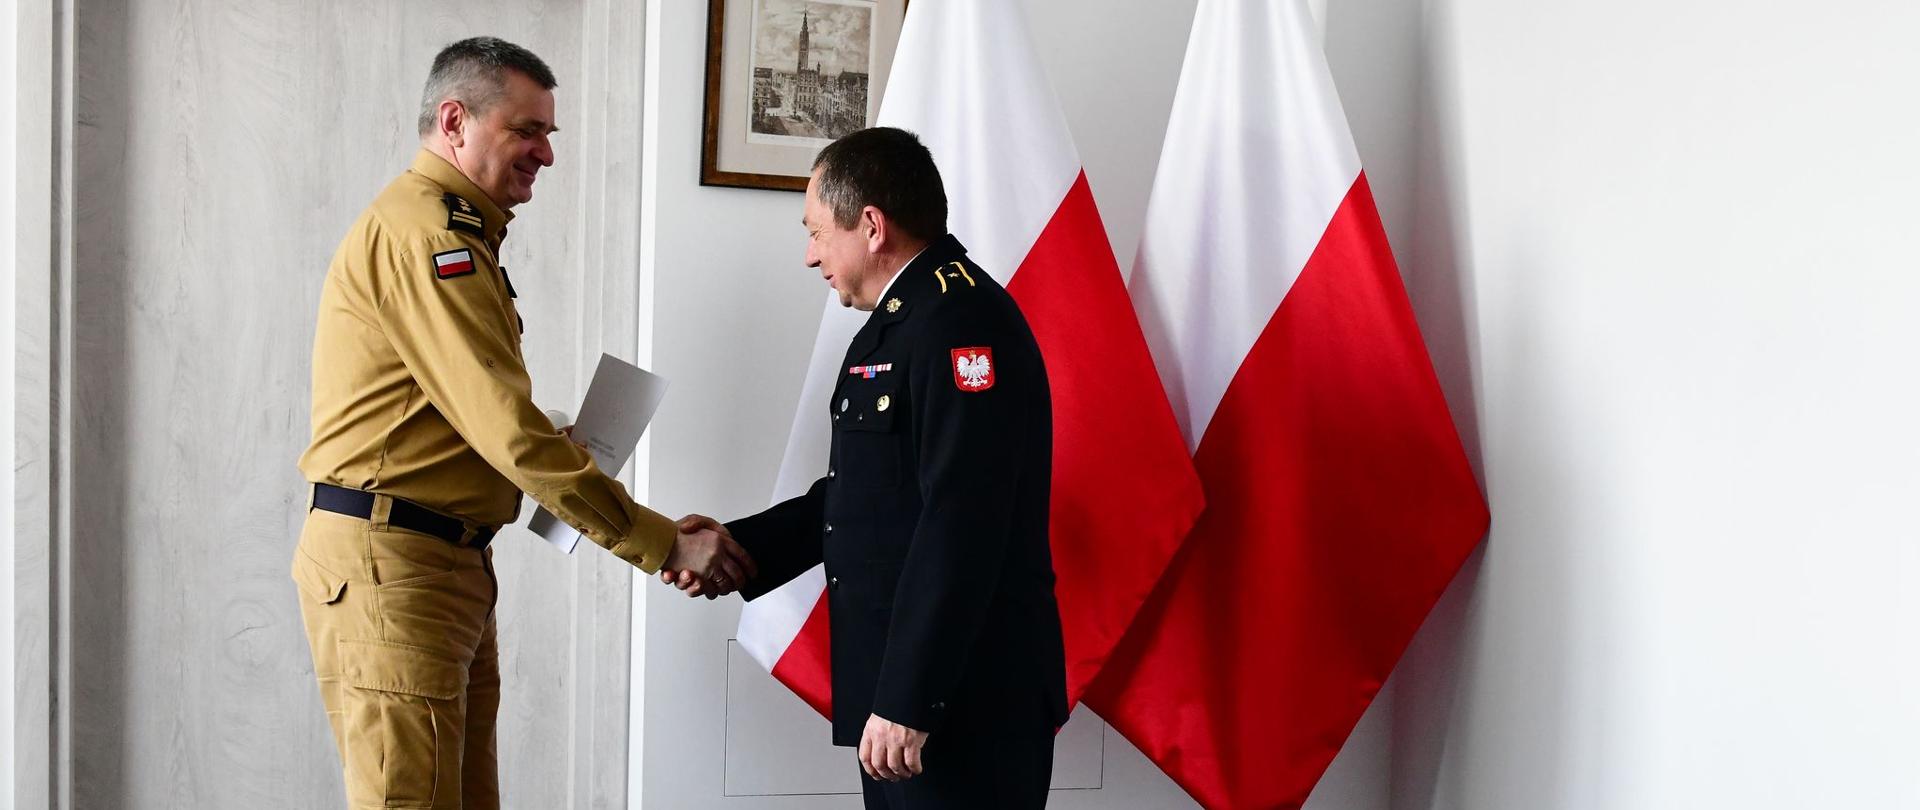 Pomorski komendant wojewódzki Państwowej Straży Pożarnej uściska dłoń strażaka wręczając mu list gratulacyjny.